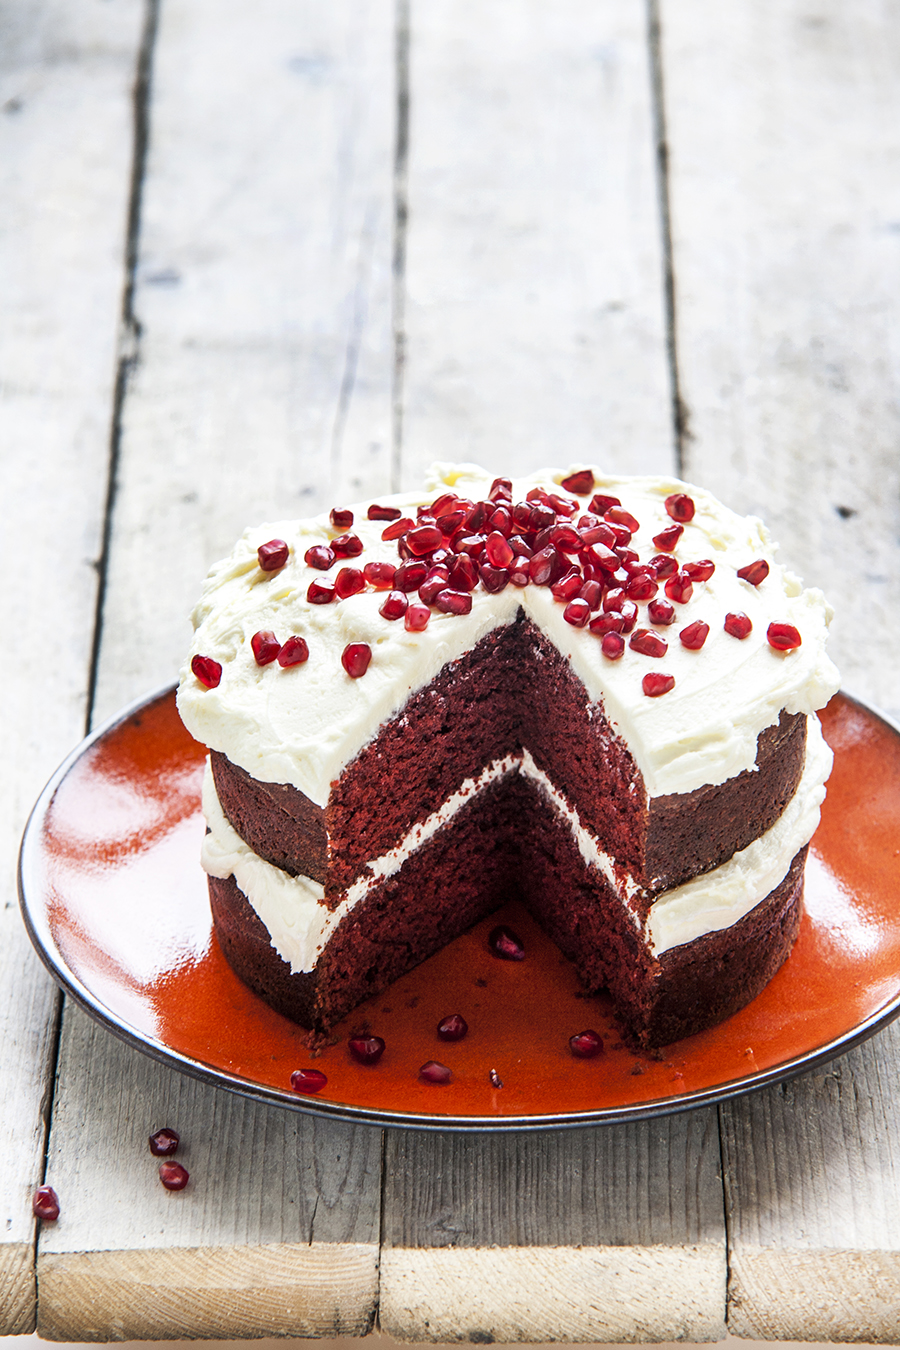 Red Velvet Cake | Kookmutsjes